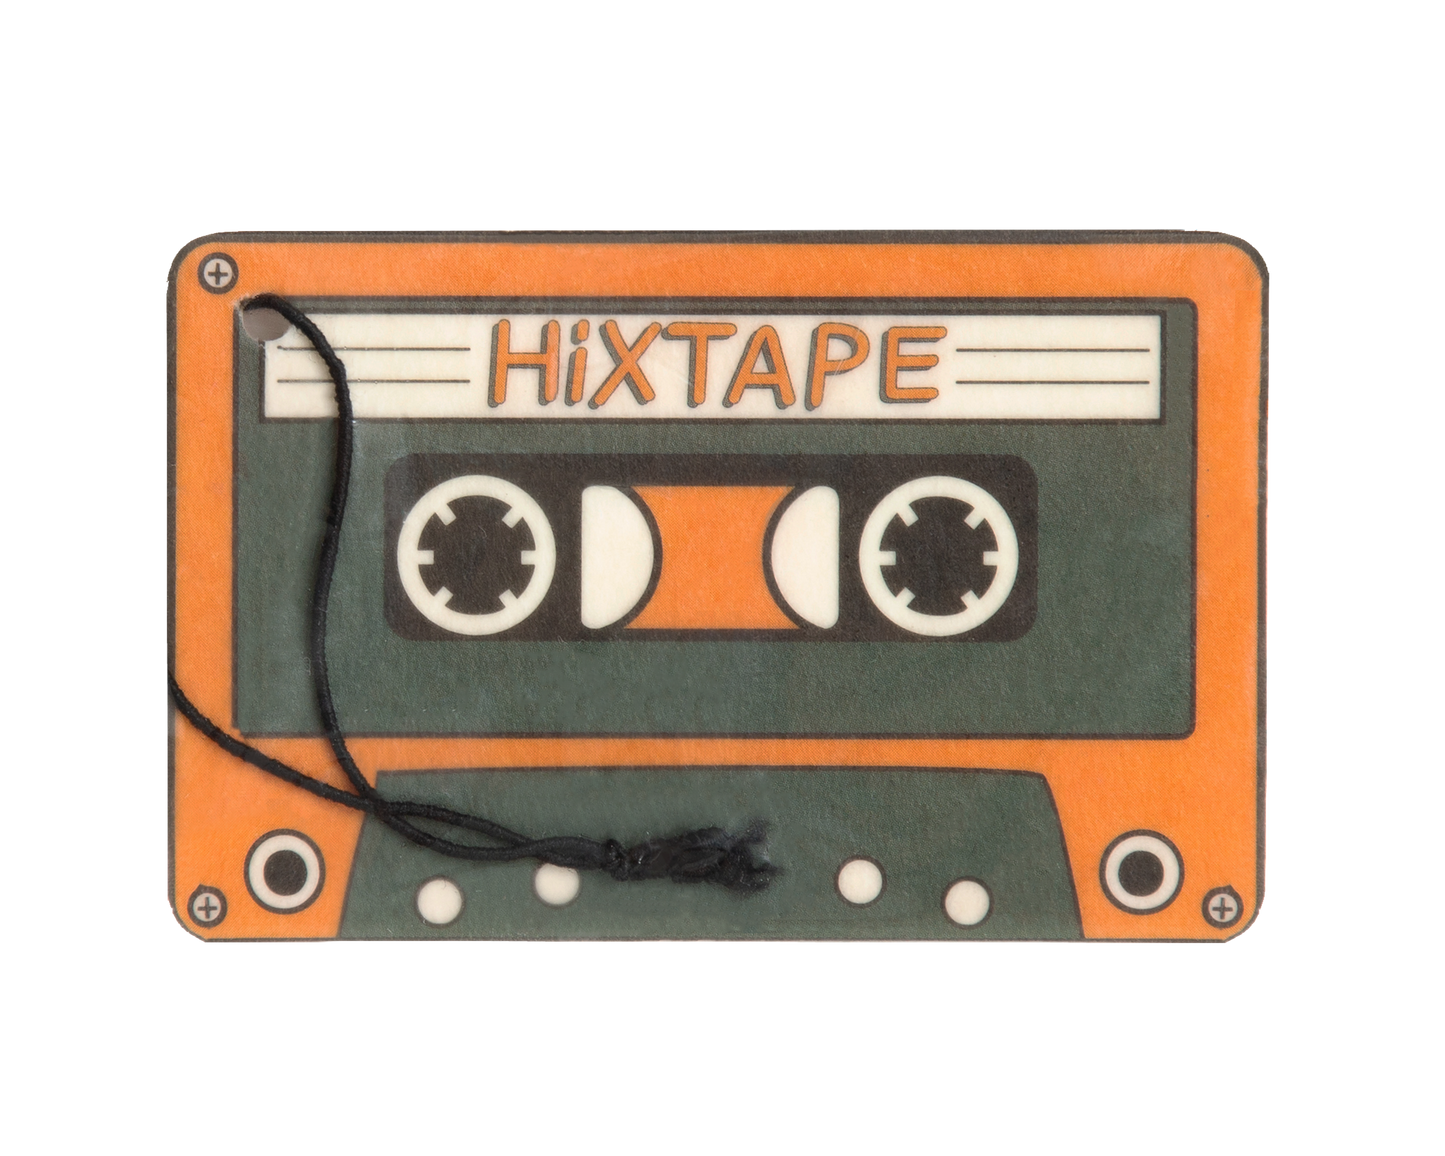 Cassette tape air freshener HiXTAPE